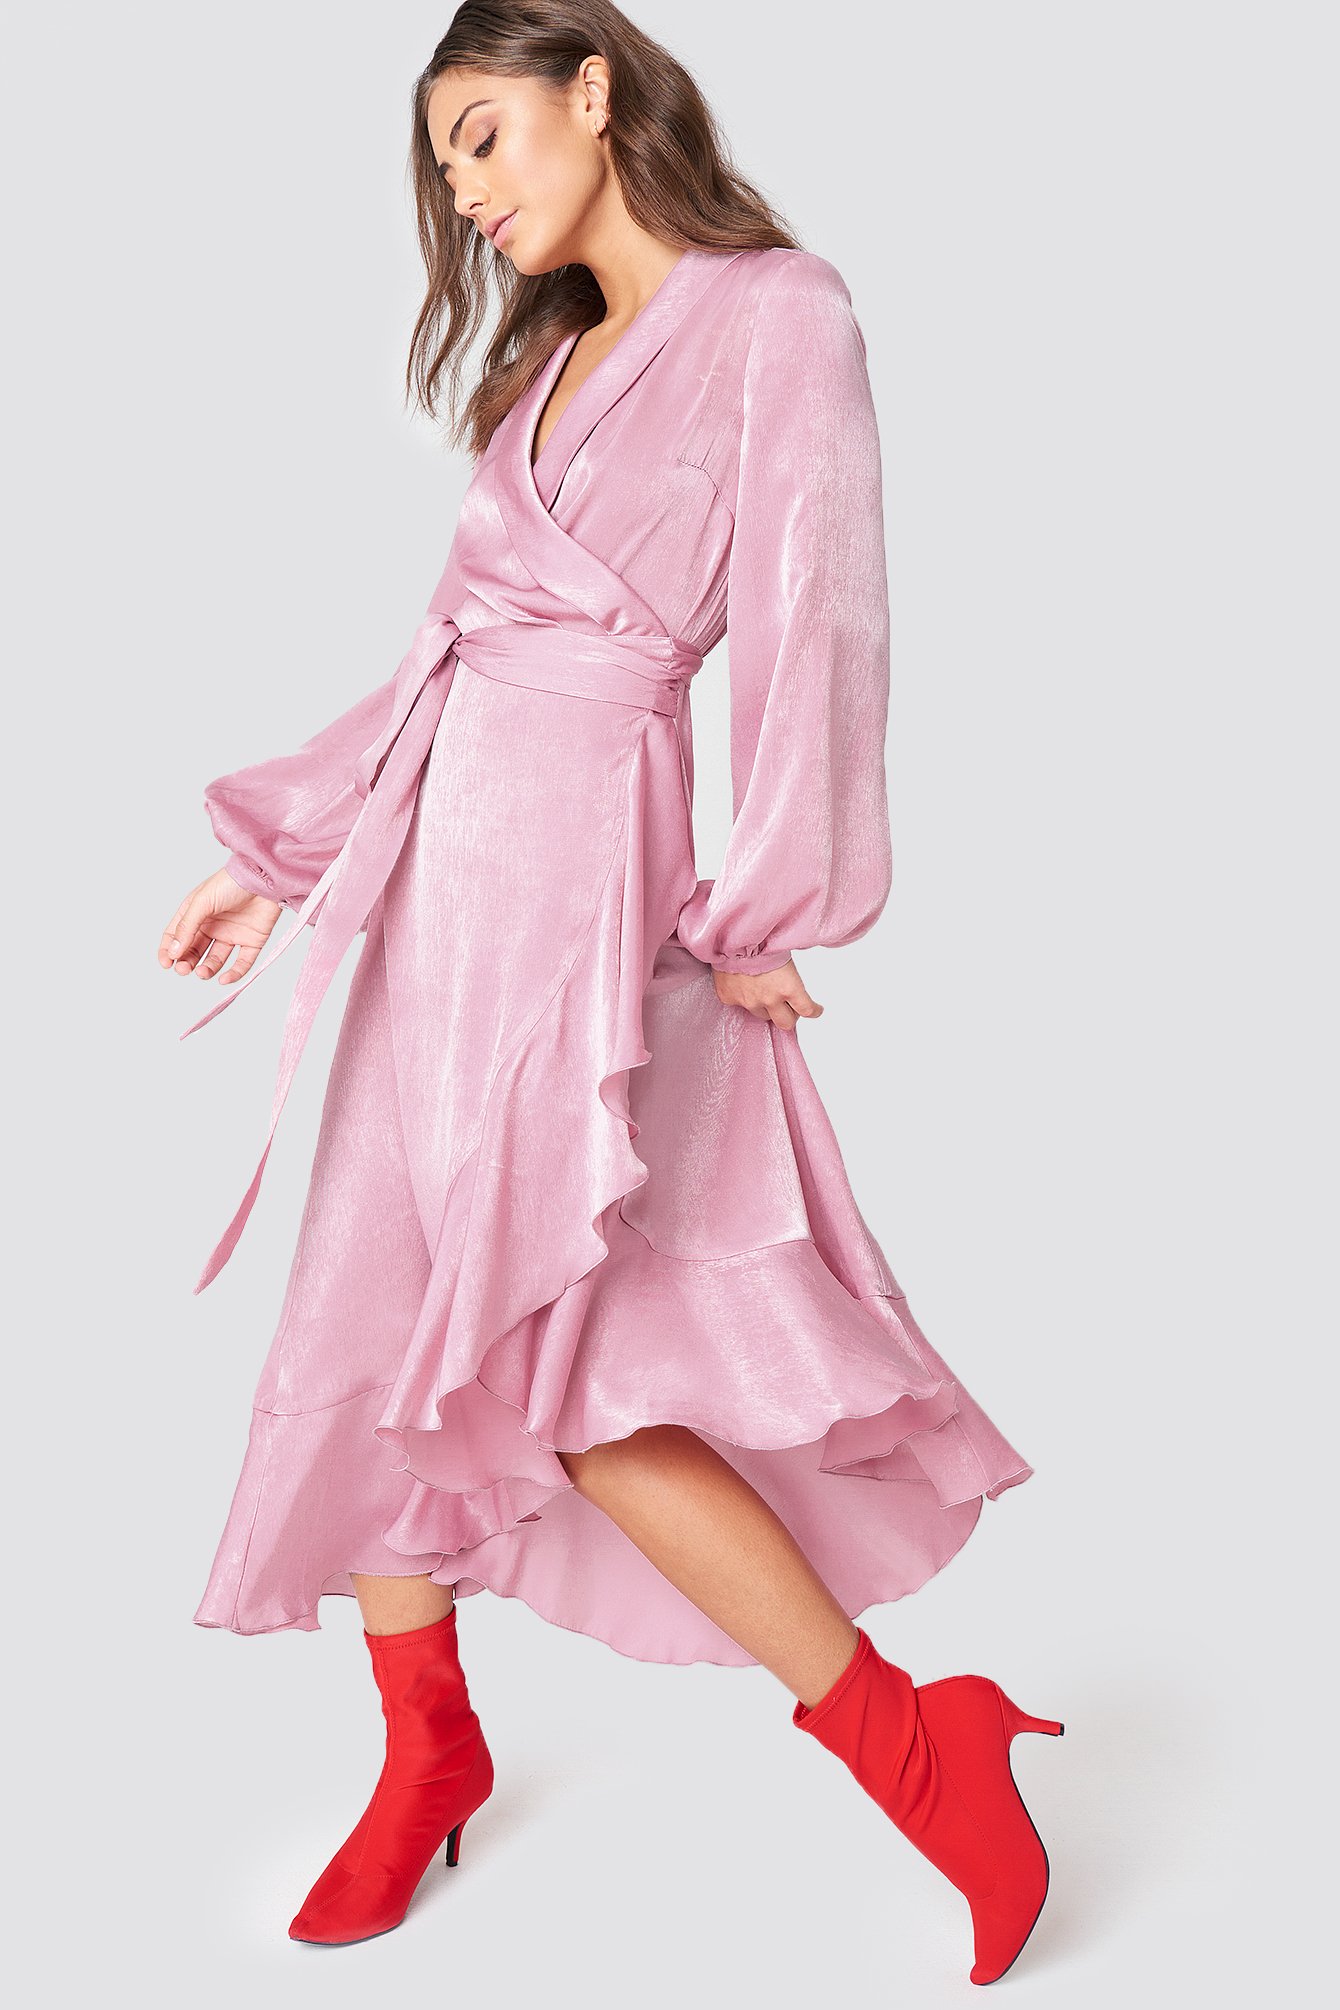 Wrap Over Satin Frill Dress Dusty Pink | na-kd.com - 1340 x 2010 jpeg 1186kB